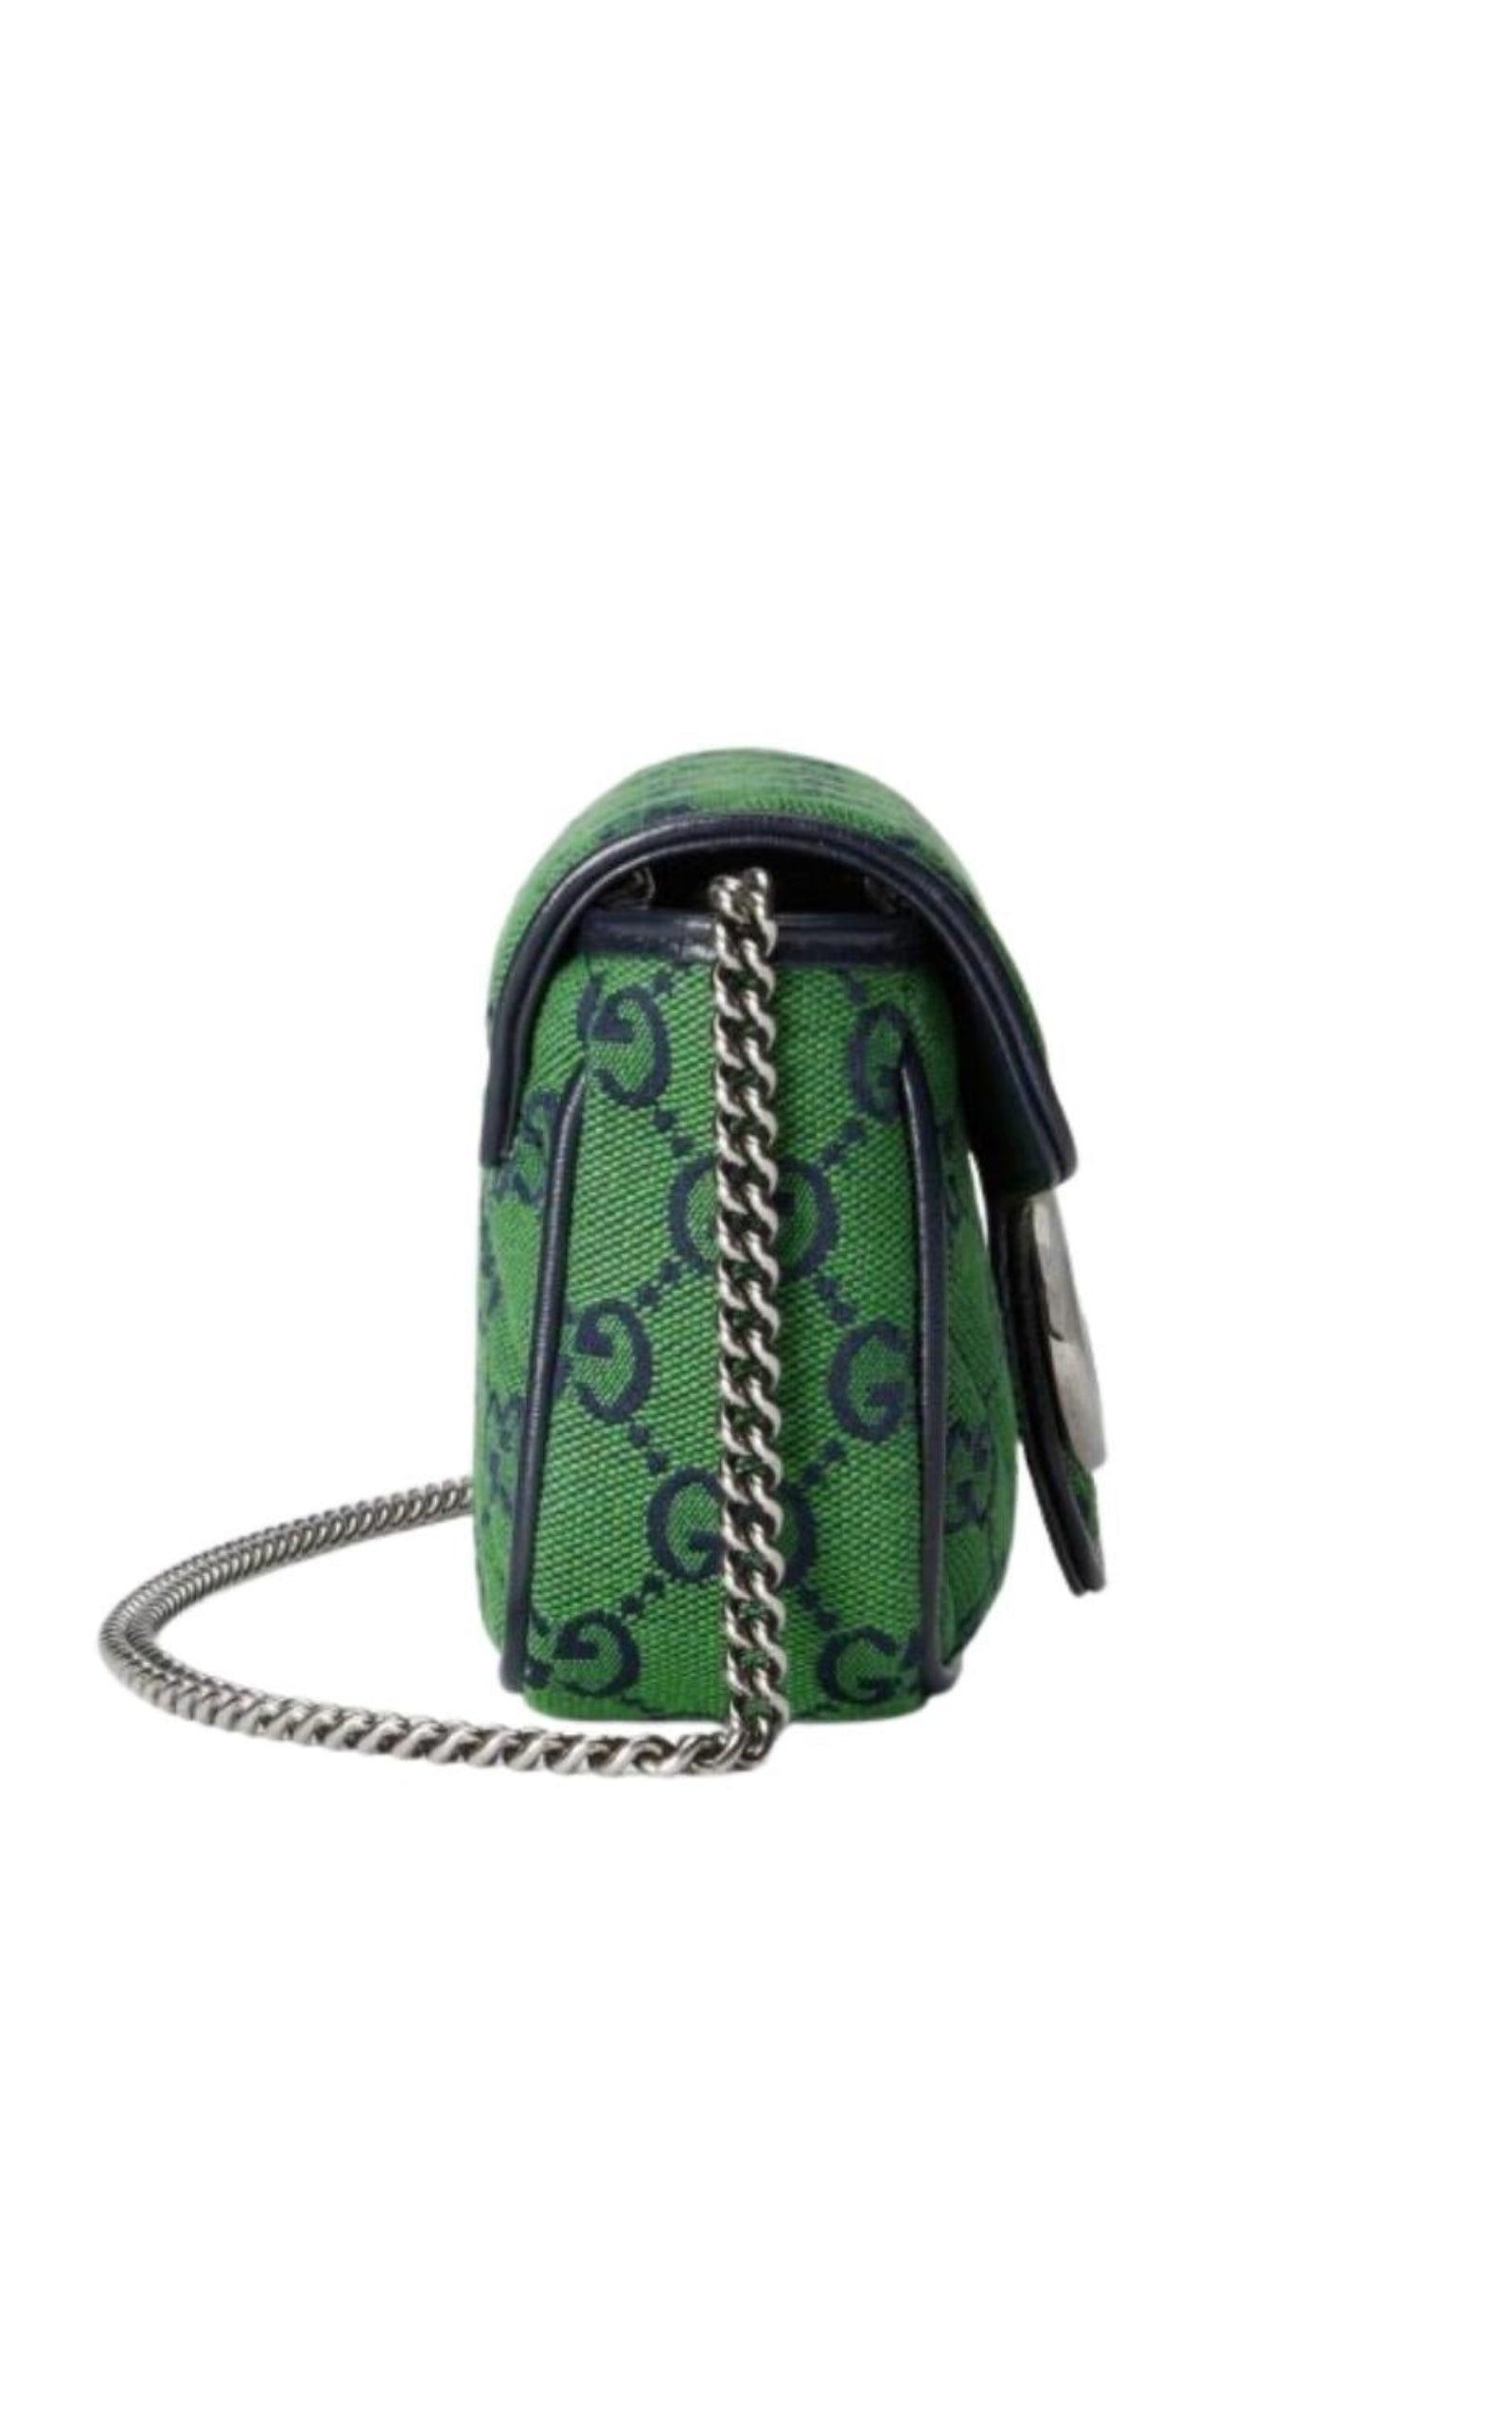 Gucci GG Marmont Multicolour Super Mini Bag